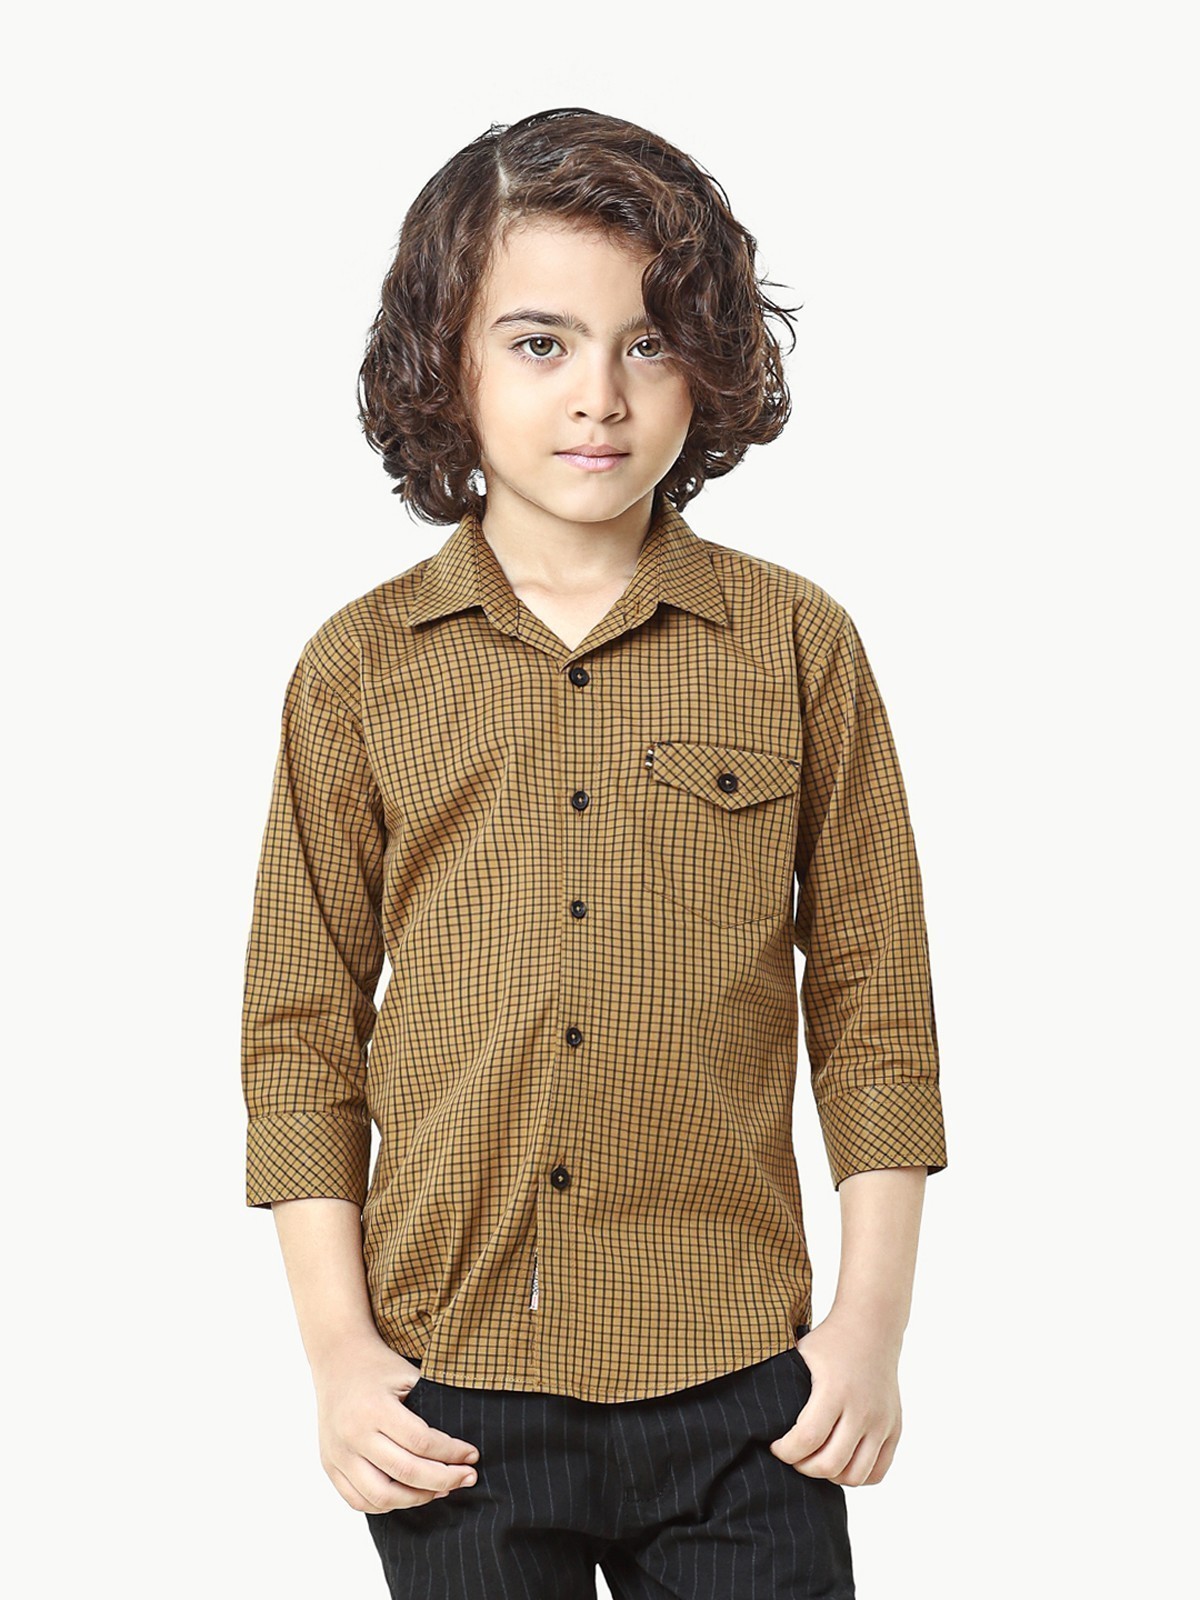 Boy's Golden Shirt - EBTS22-27441